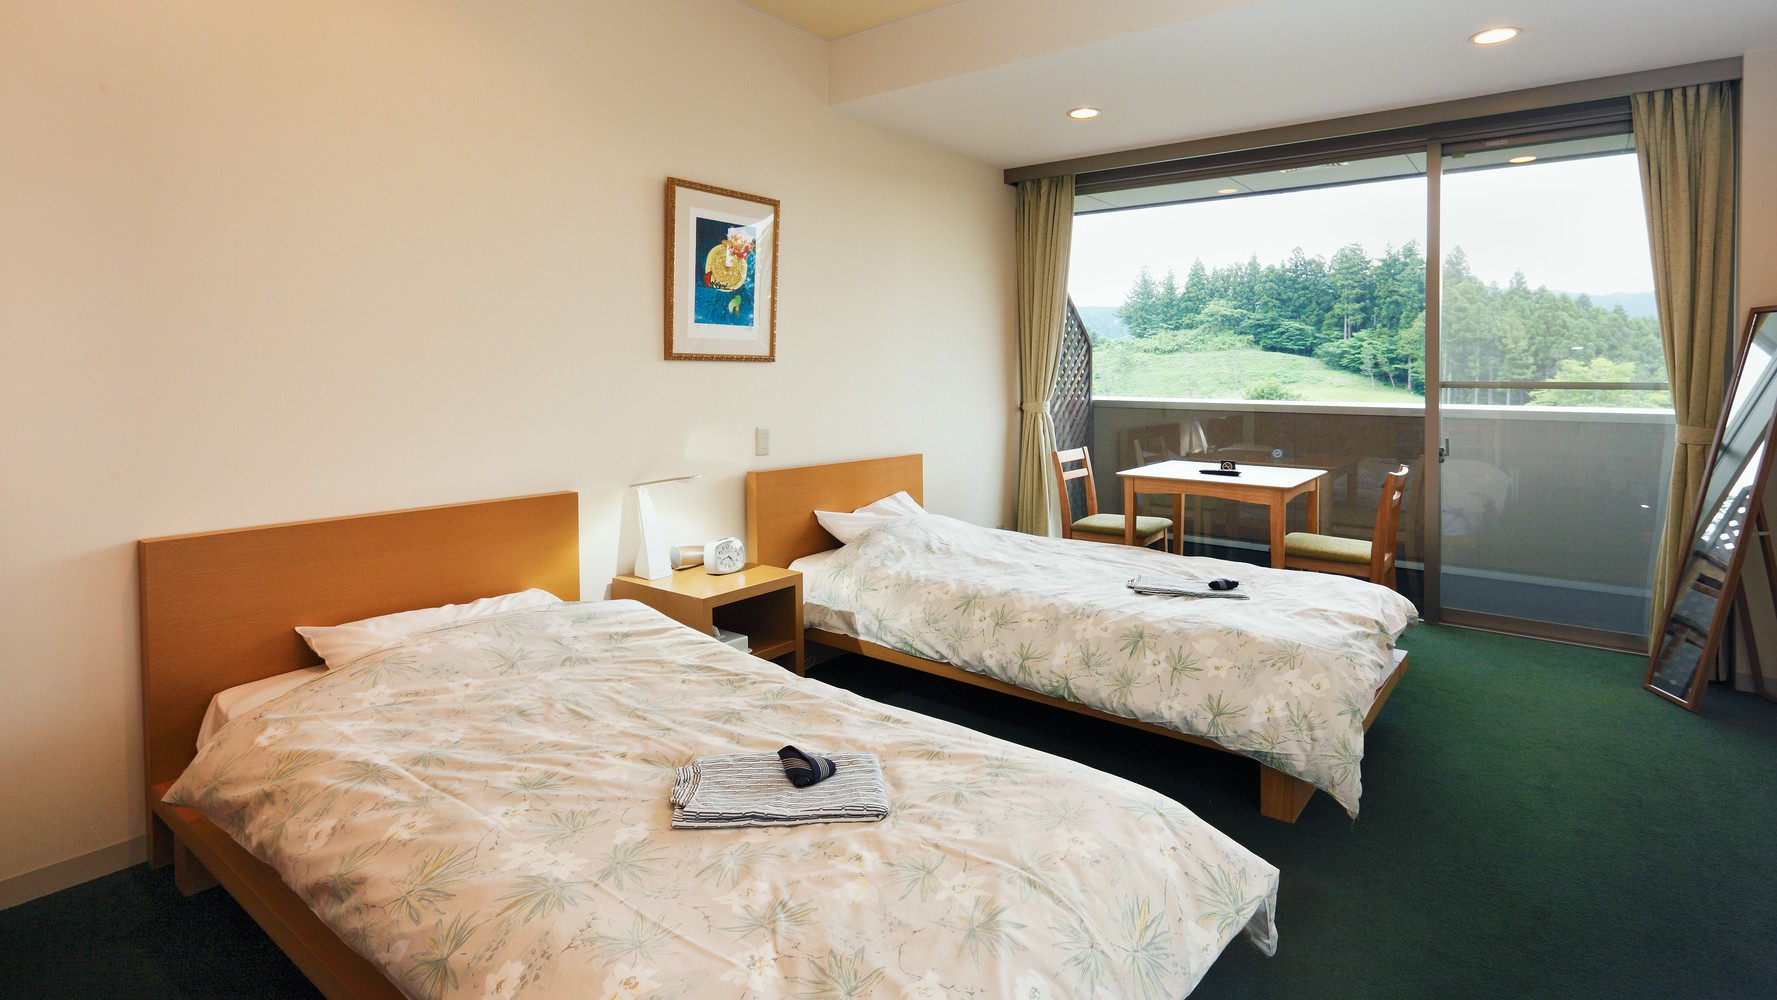 【1泊素泊まり】シンプルな素泊まりプラン。東軽井沢の自然の中でごゆっくりとお過ごしください♪